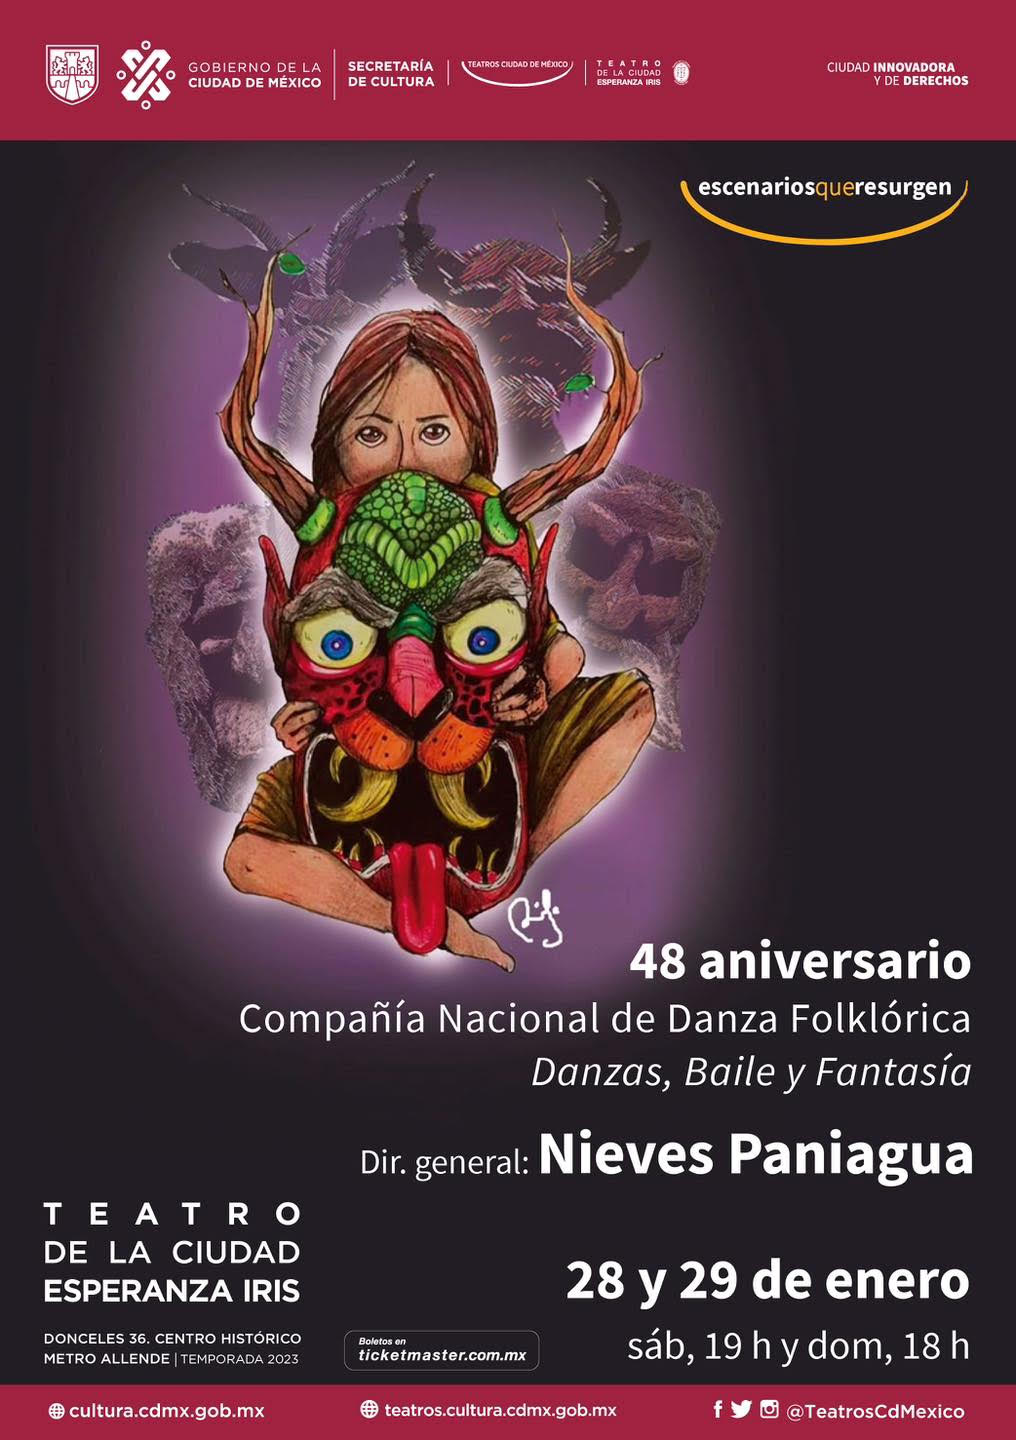 48 aniversario - Compañia Nacional de Danza Folklórica Danzas, Baile y Fantasía